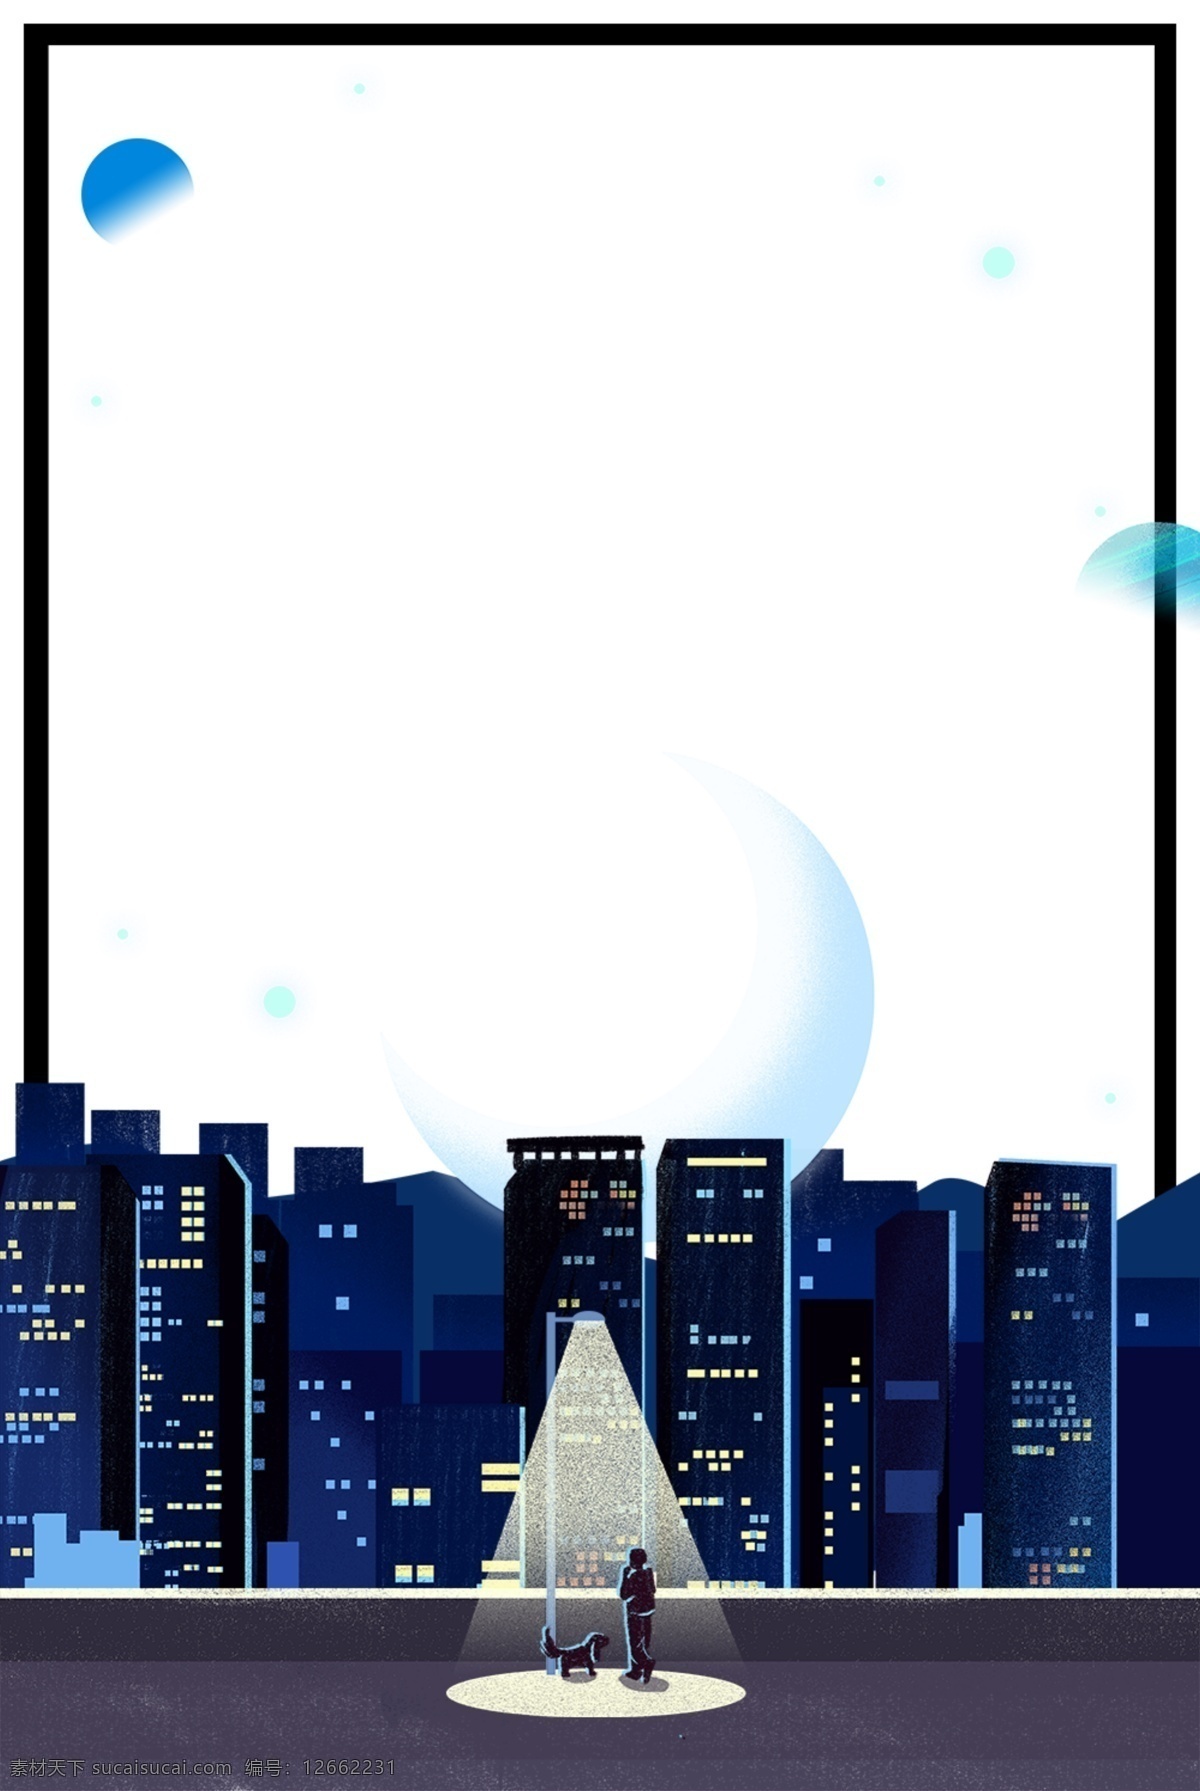 城市 夜景 主题 边框 卡通 手绘 精美 插画 海报插画 广告插画 小清新 简约风 装饰图案 城市夜景